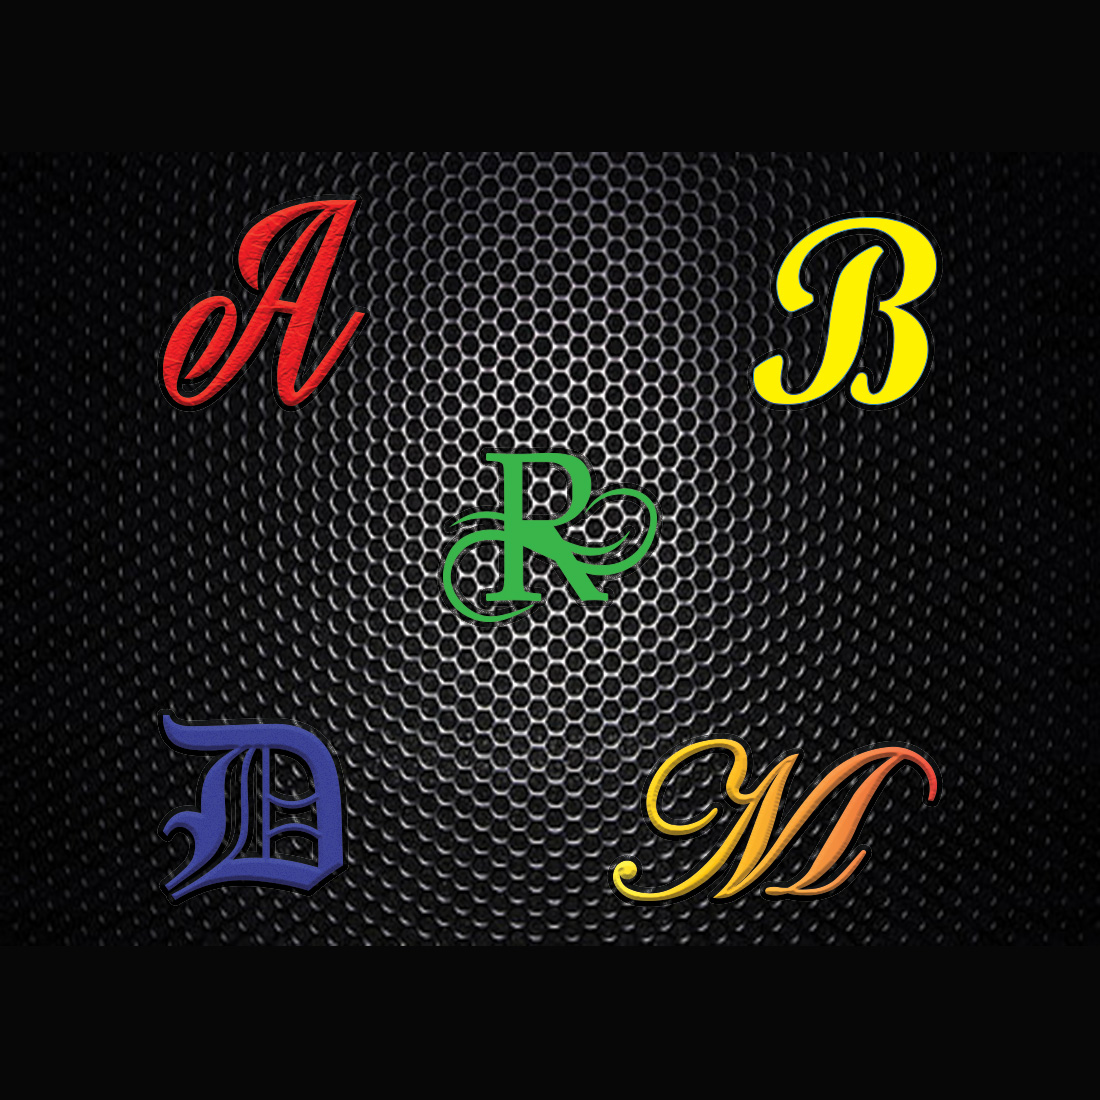 Logos Lettering Design Bundle cover image.